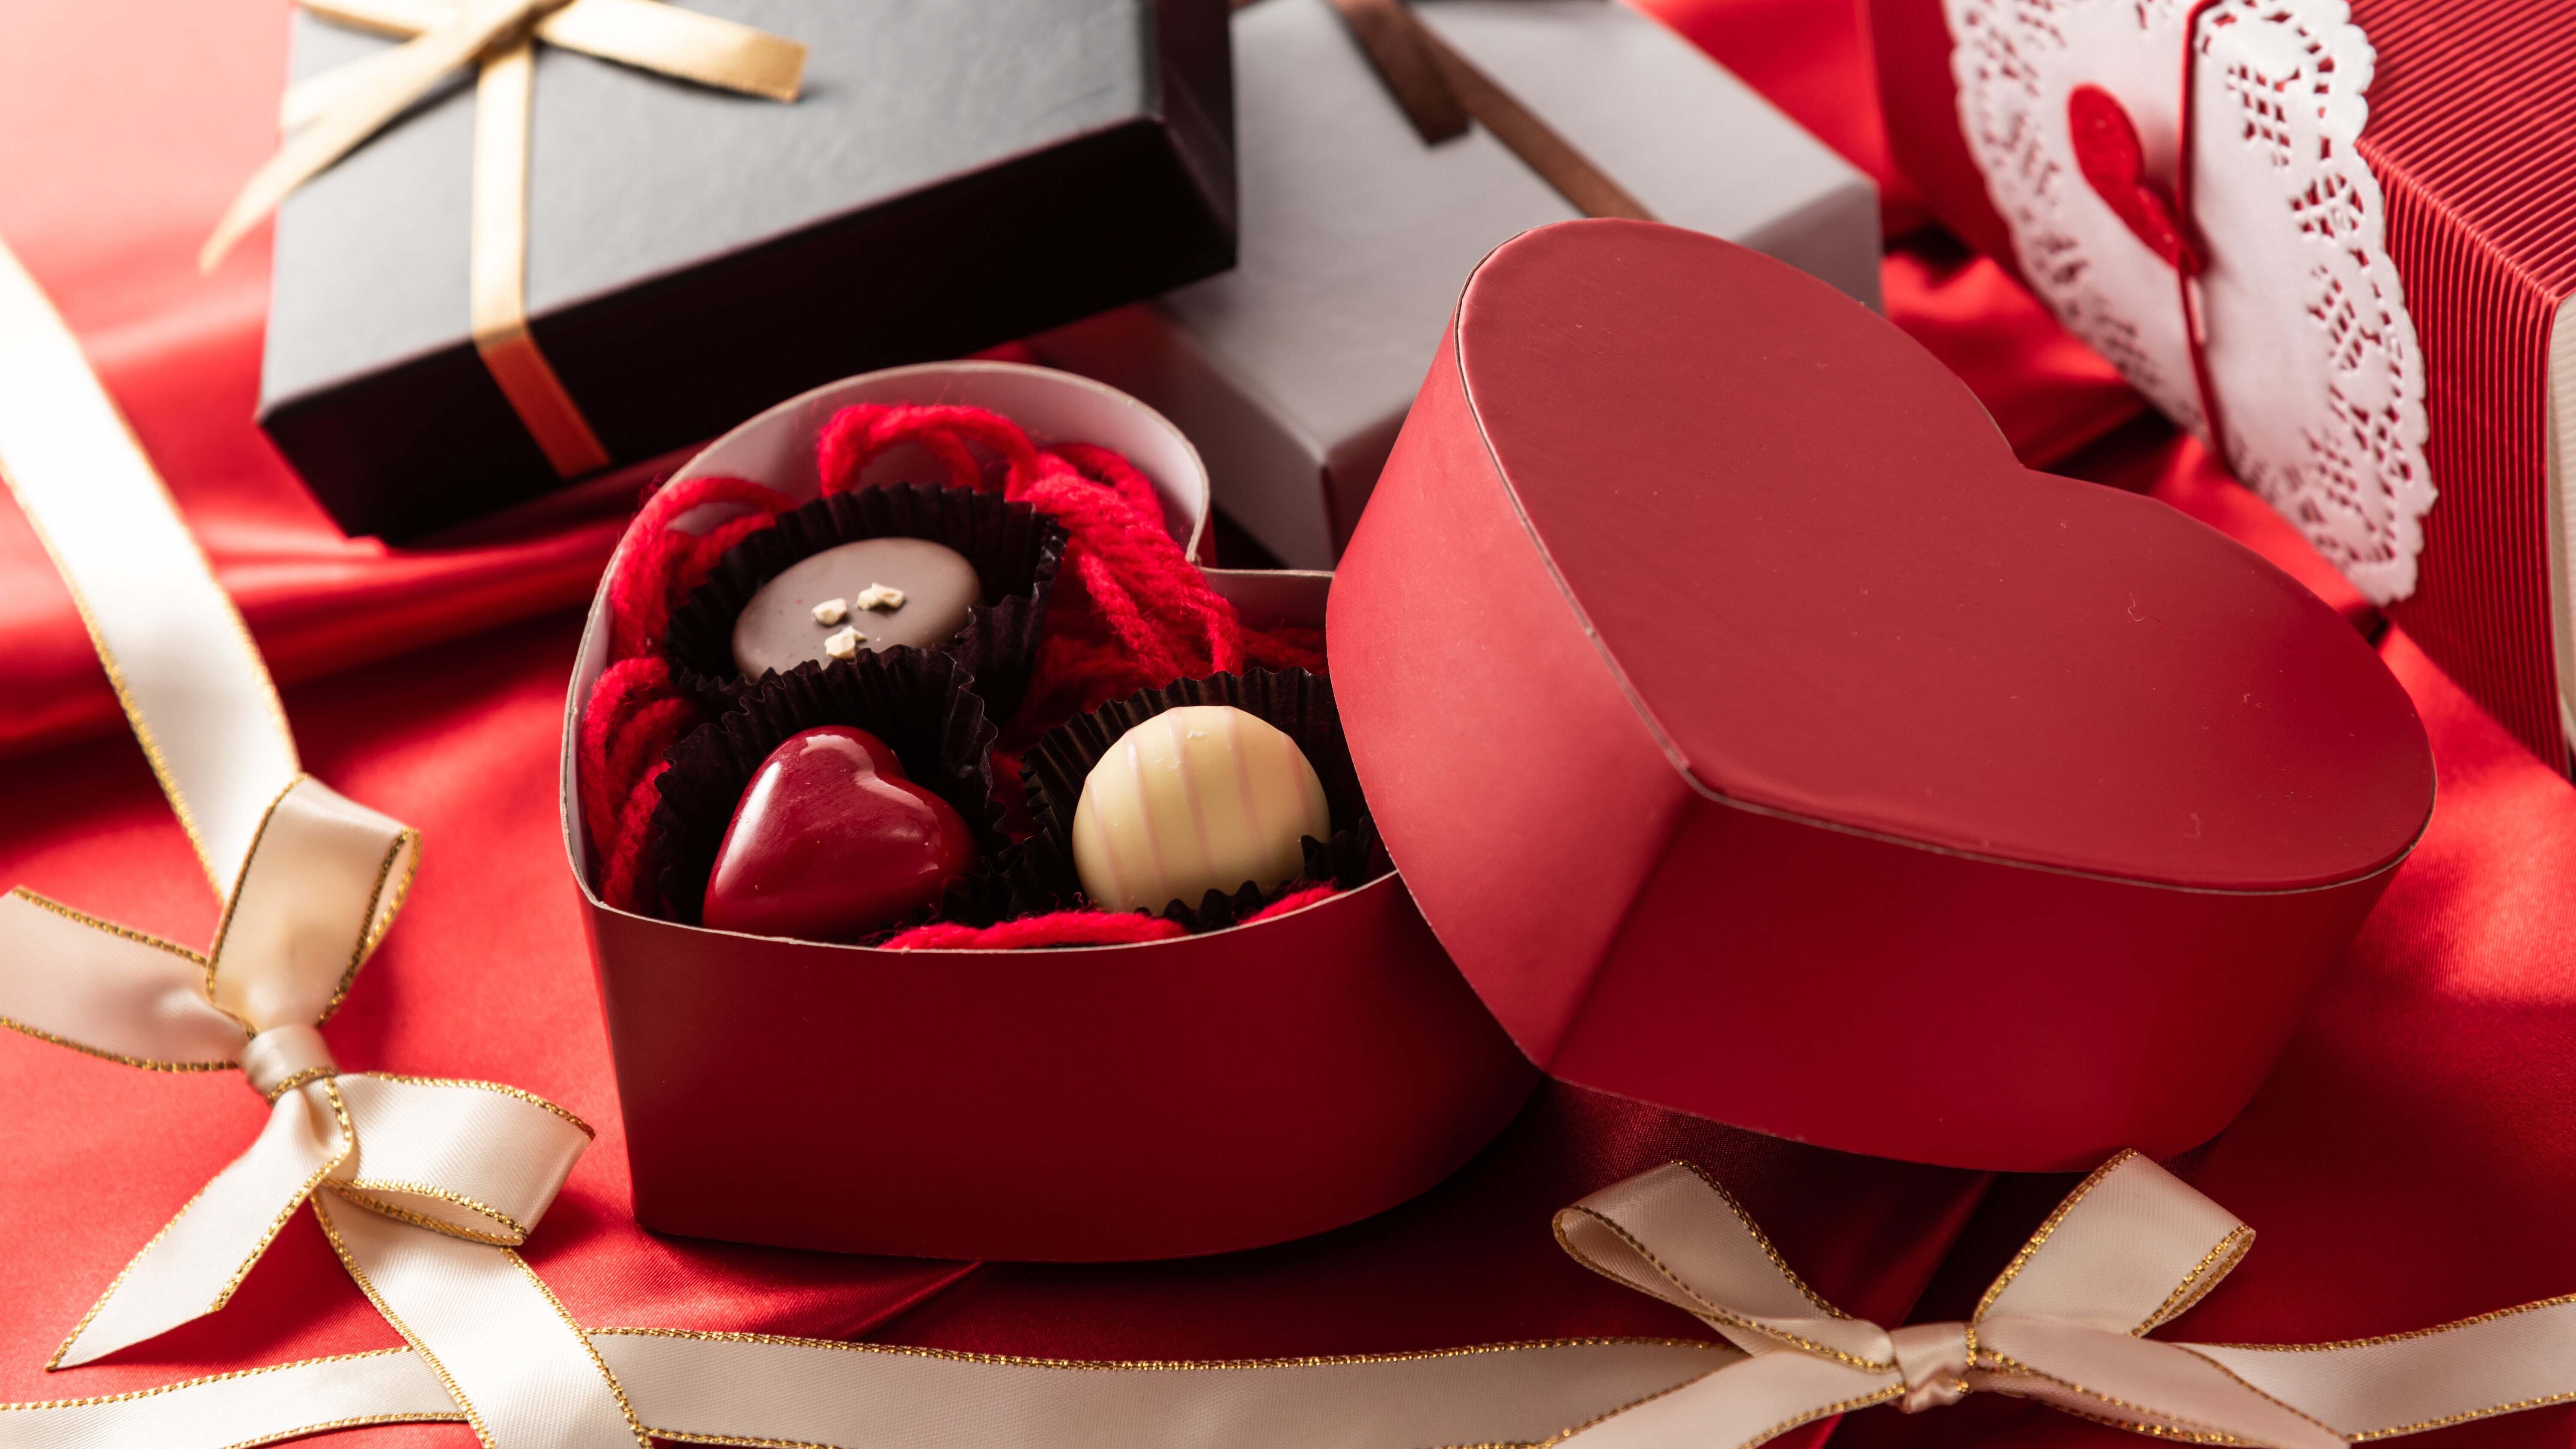 Ngày Valentine tặng gì cho bạn trai? Chocolate là món quà ý nghĩa. (Ảnh: History)